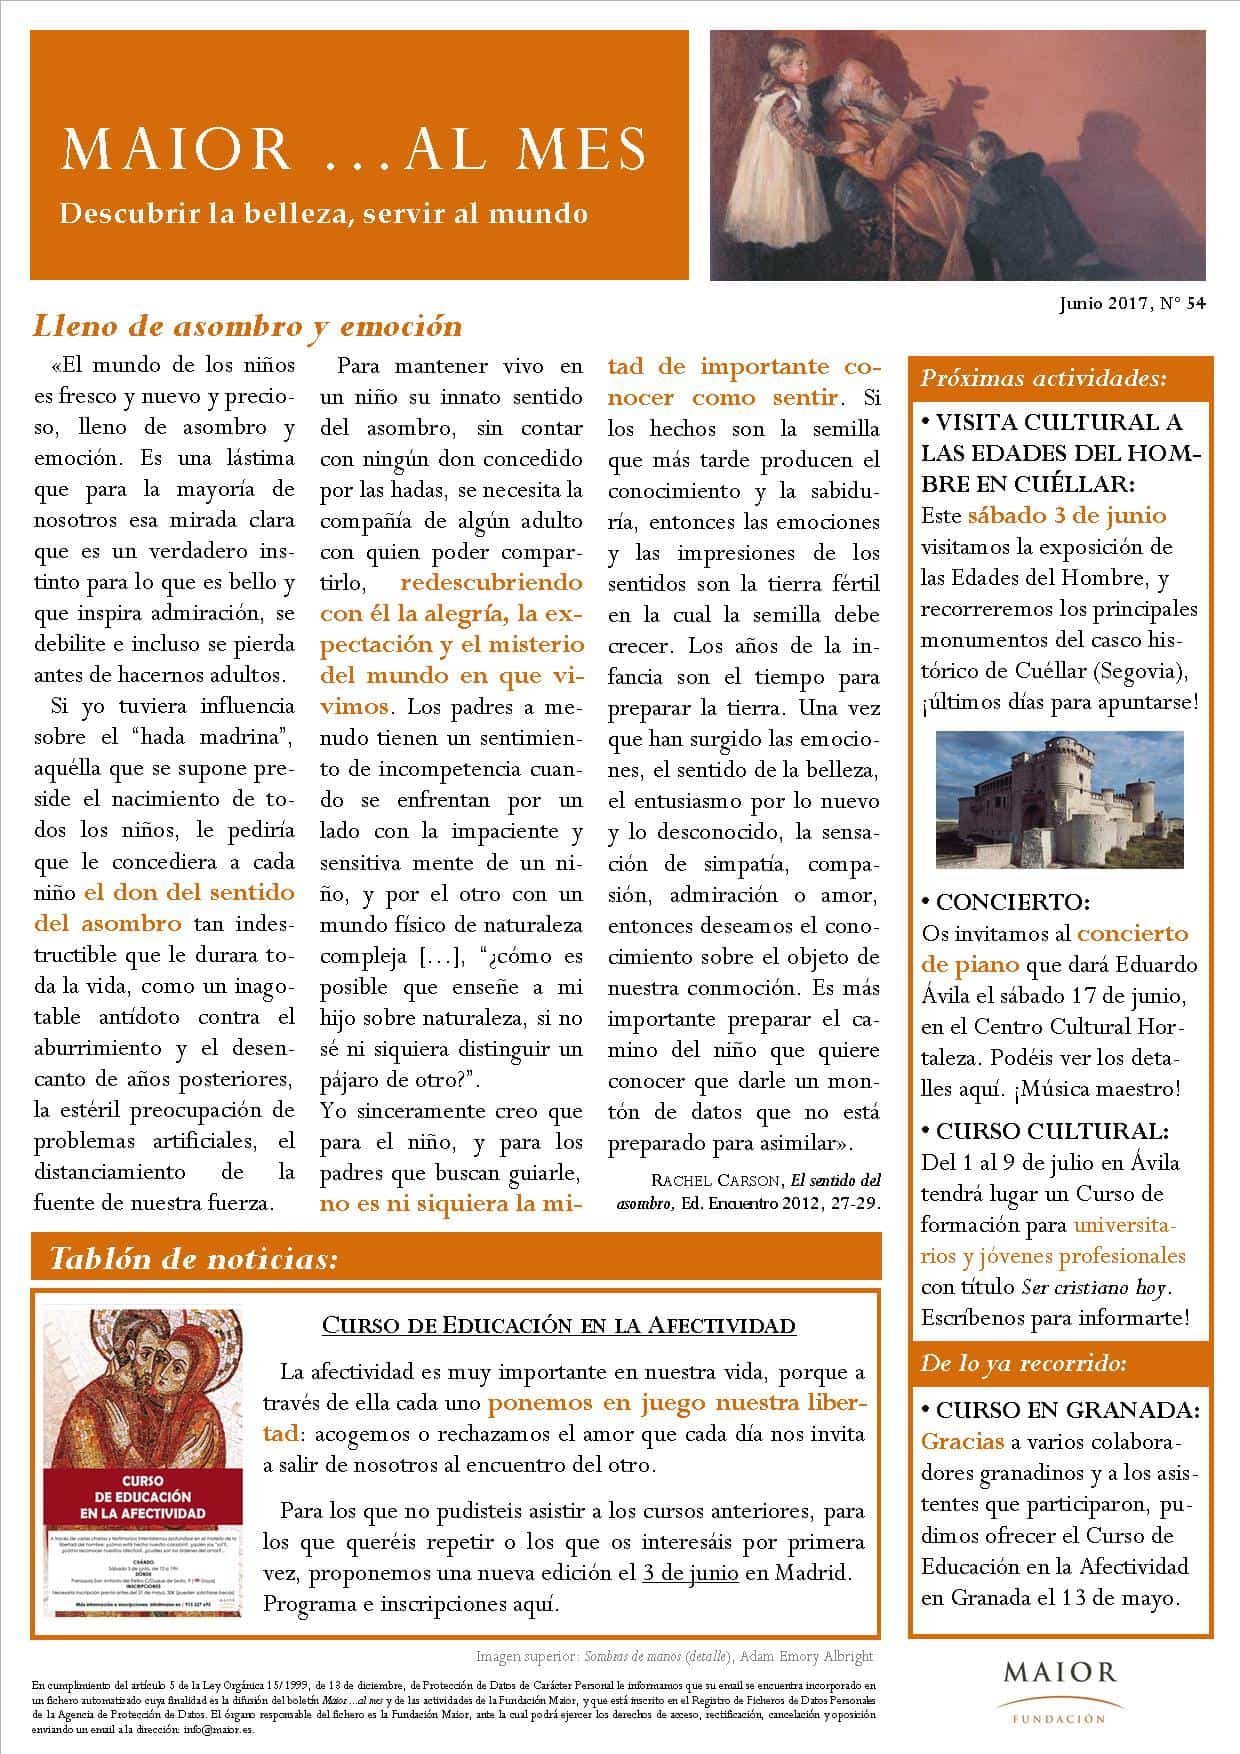 Boletín mensual de noticias y actividades de la Fundación Maior. Edición de junio 2017